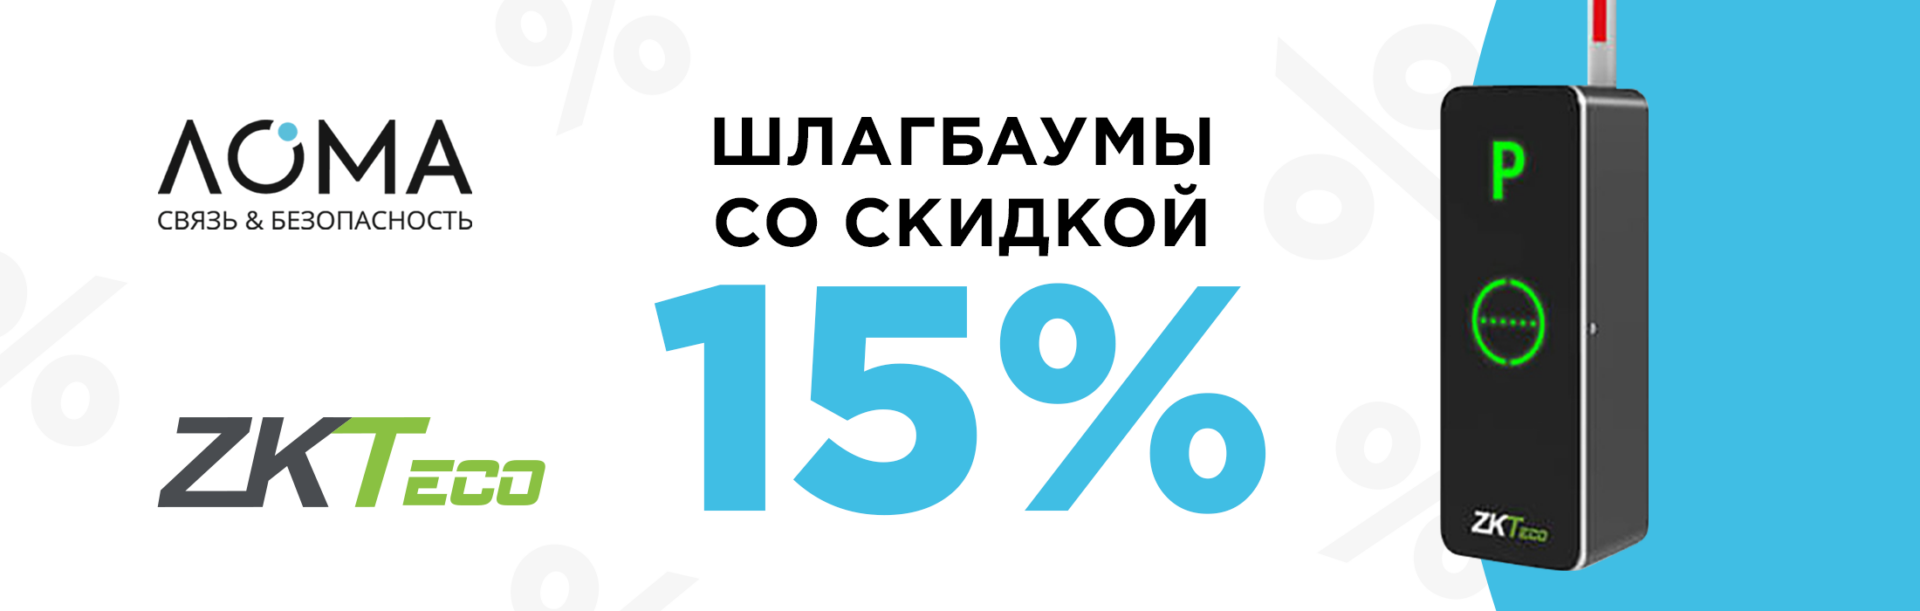 Скидка на шлагбаумы -15%